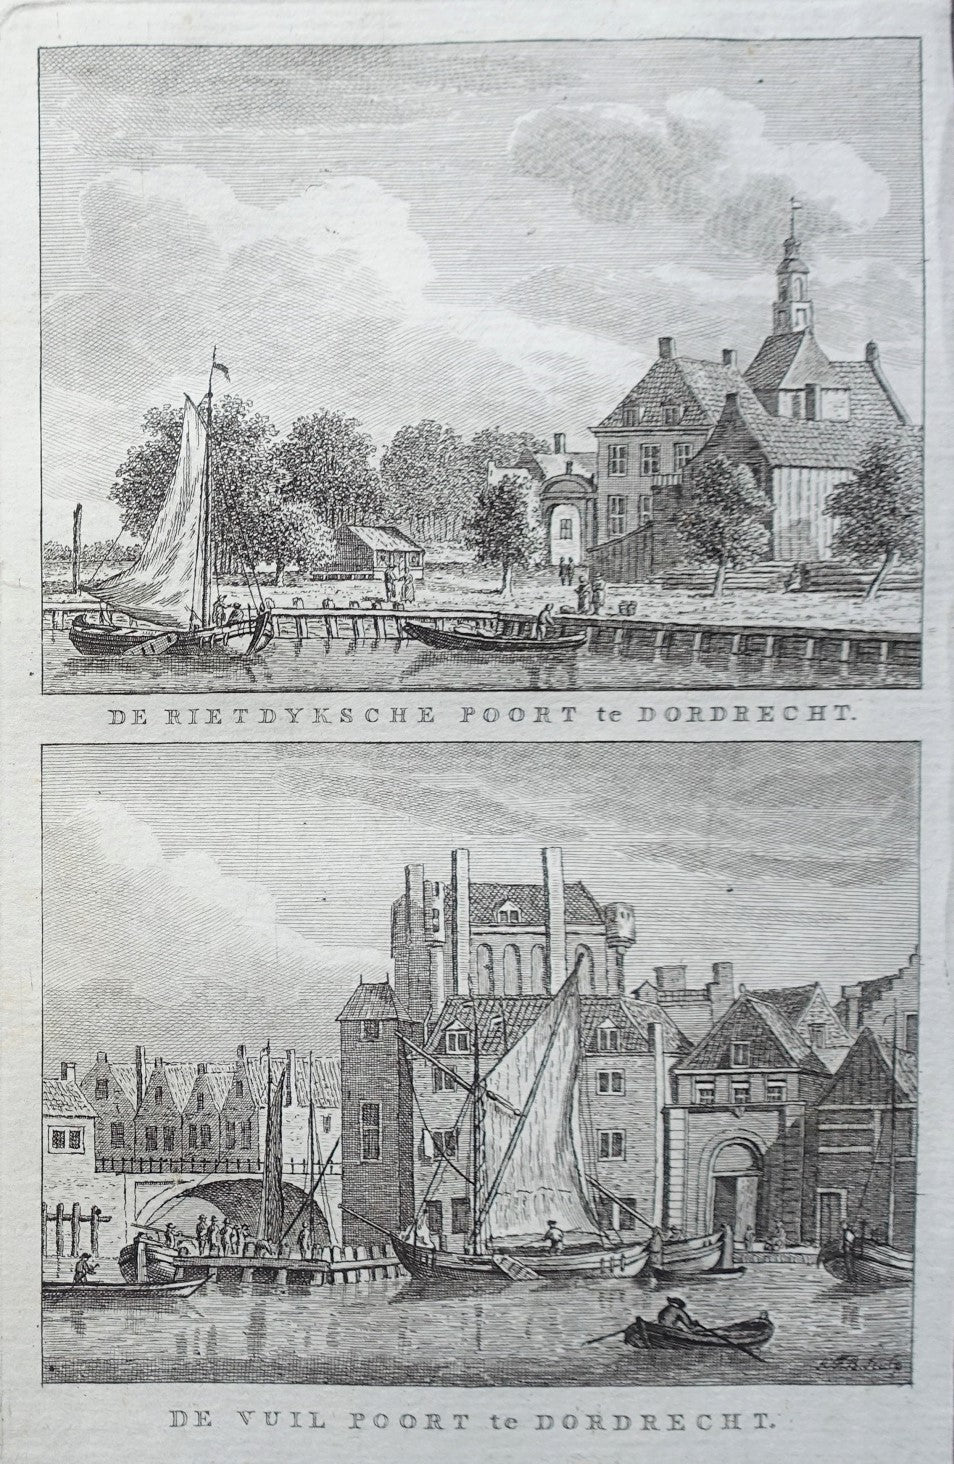 Dordrecht Rietdijkse poort en Vuilpoort - KF Bendorp - 1793